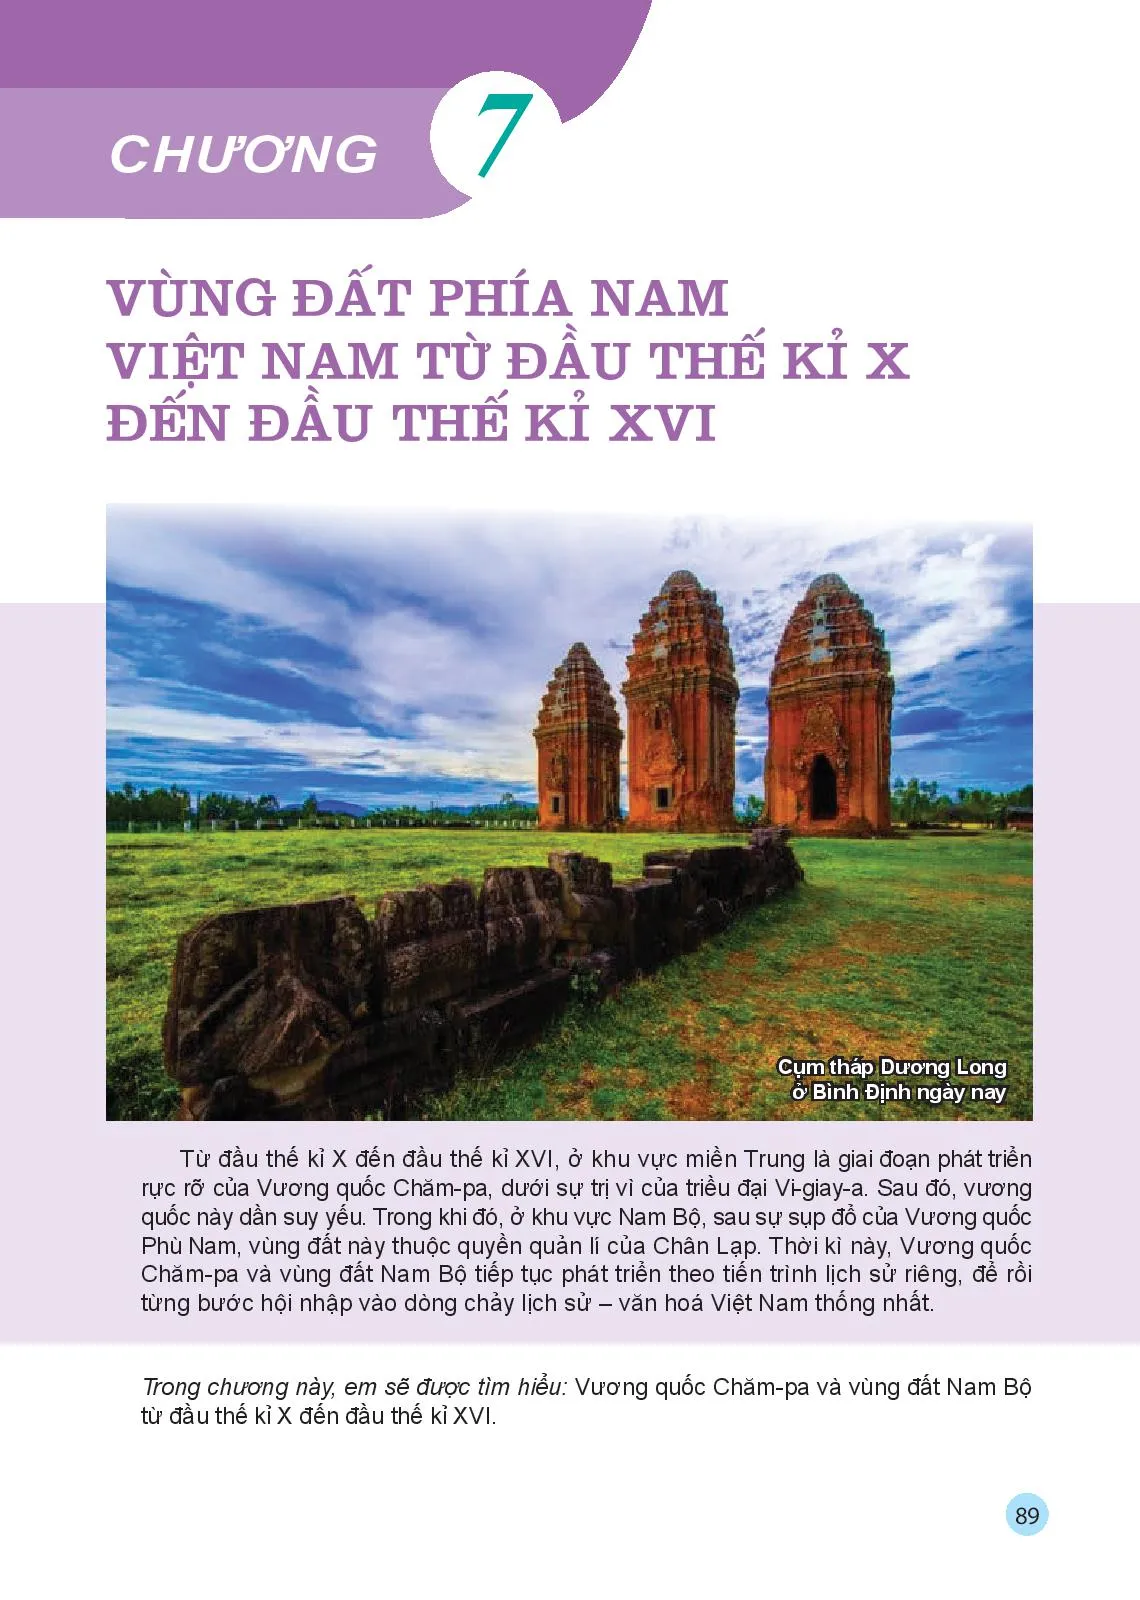 Chương 7. Vùng đất phía Nam Việt Nam từ đầu thế kỉ X đến đầu thế kỉ XVI